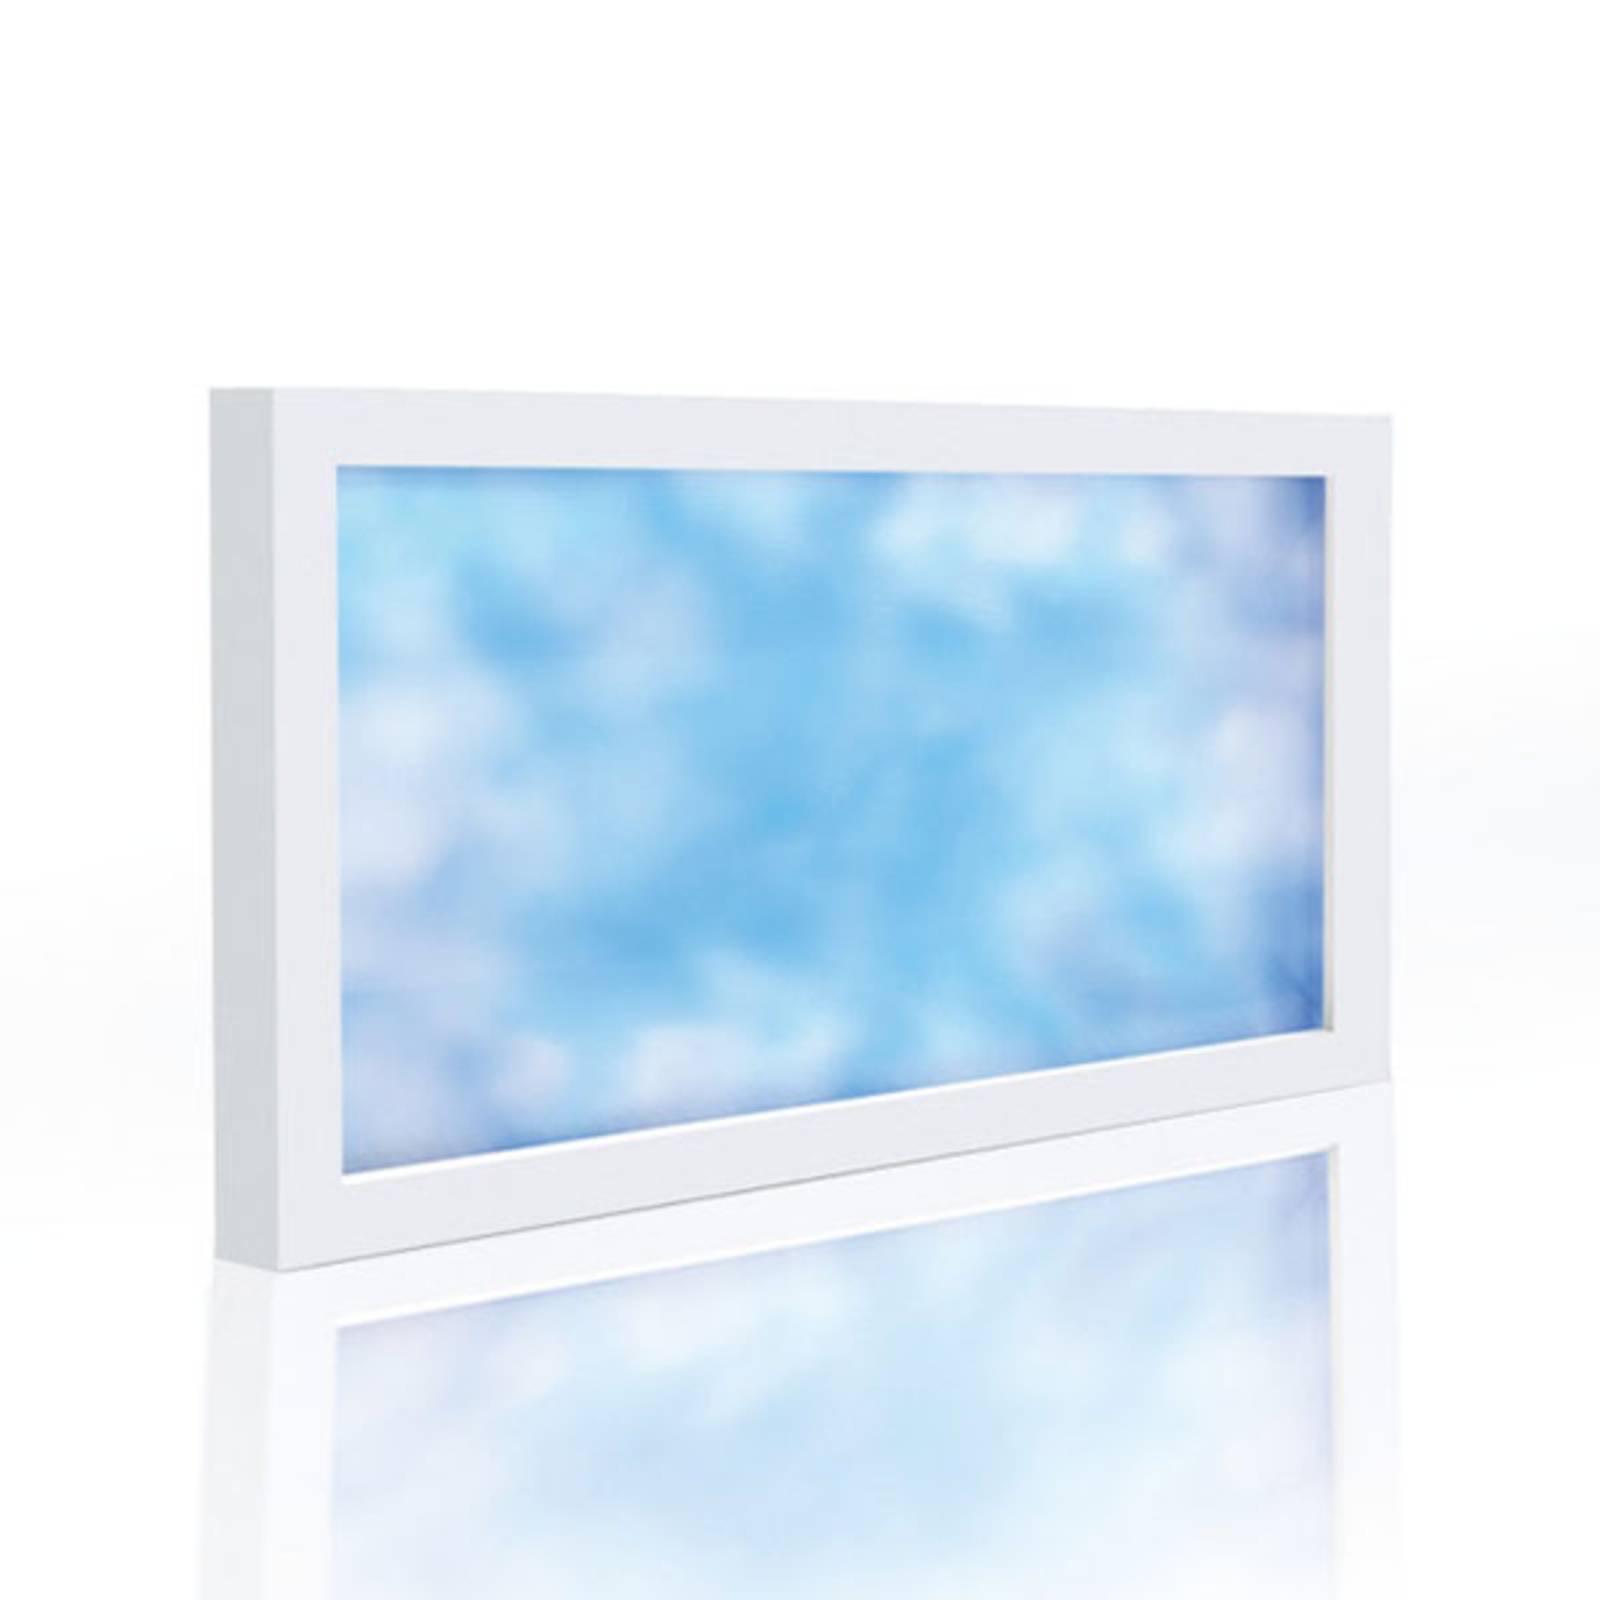 Hera led paneel sky window 120 x 60cm